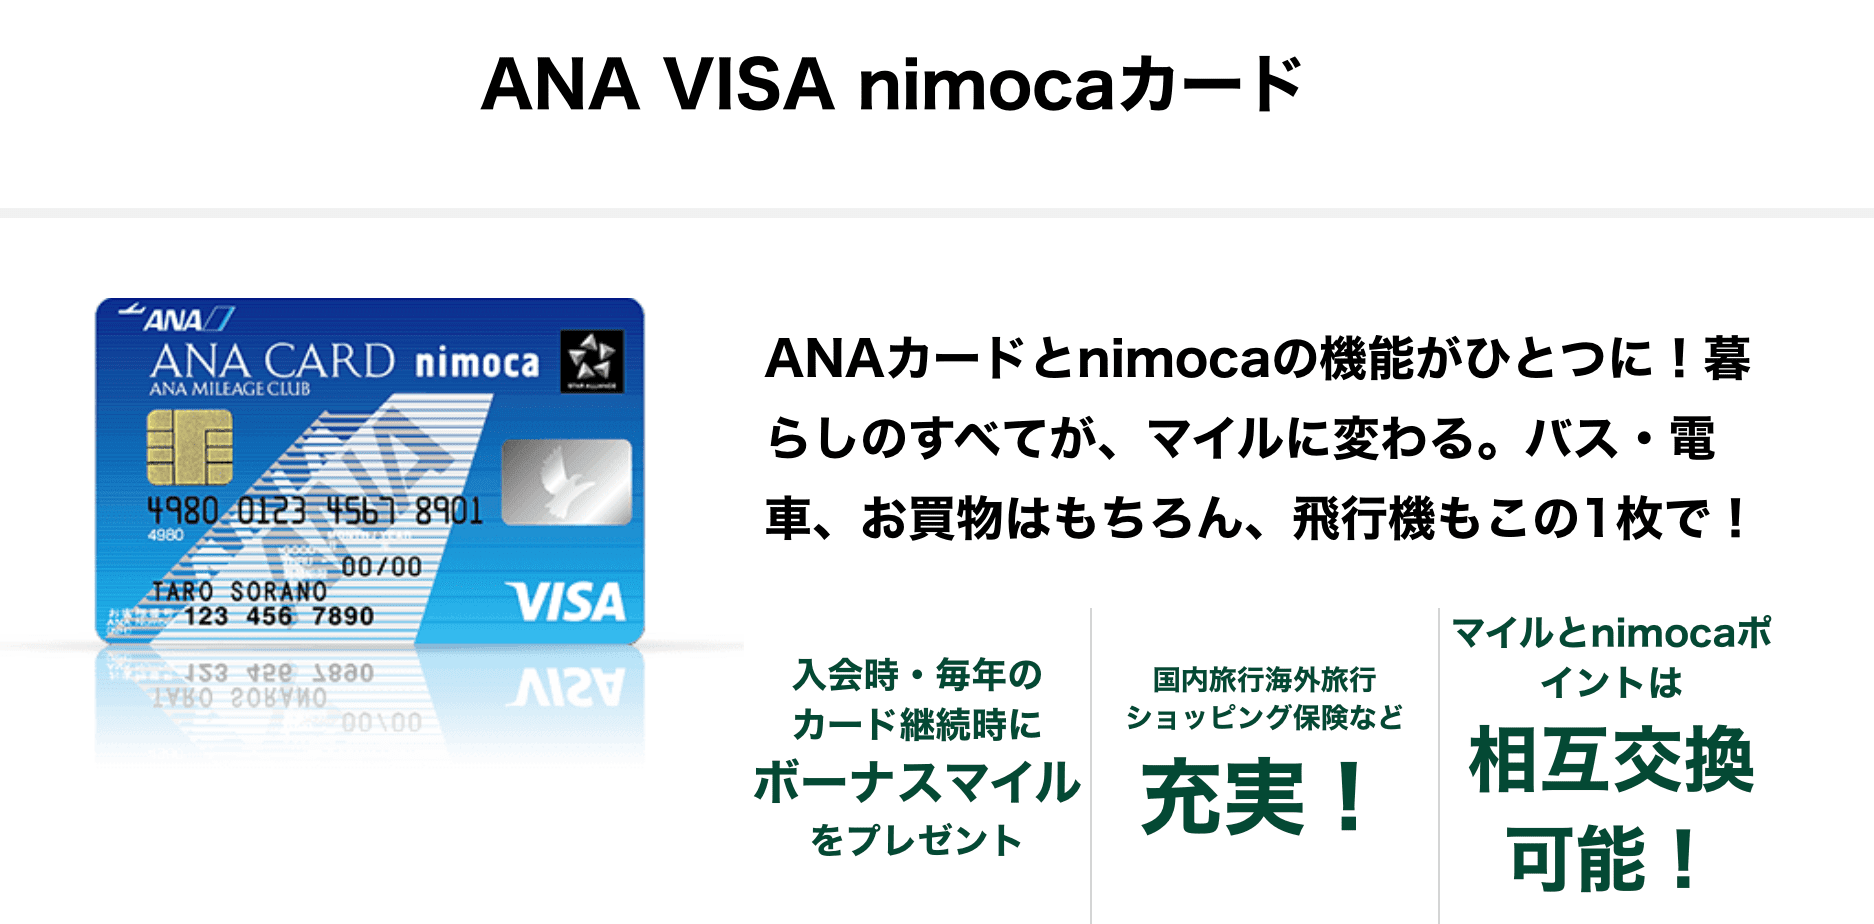 ANA VISA nimocaカード